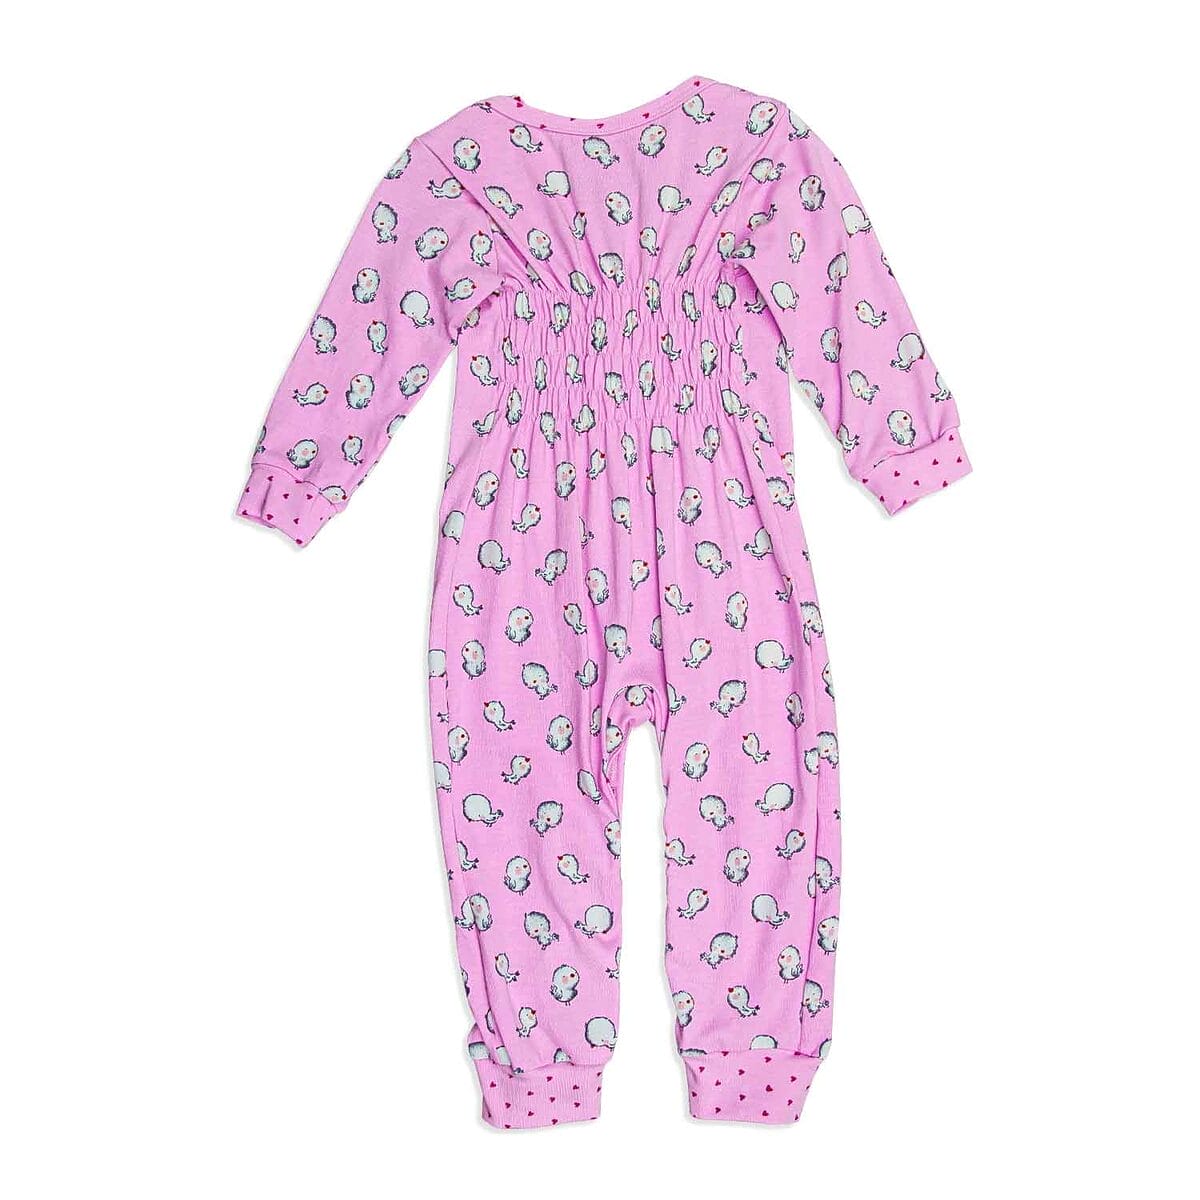 Bequemer Baby-Schlafanzug in Bubblegum-Pink mit entzückenden kleinen Vögeln, perfekt für süße Träume und ruhige Nächte.